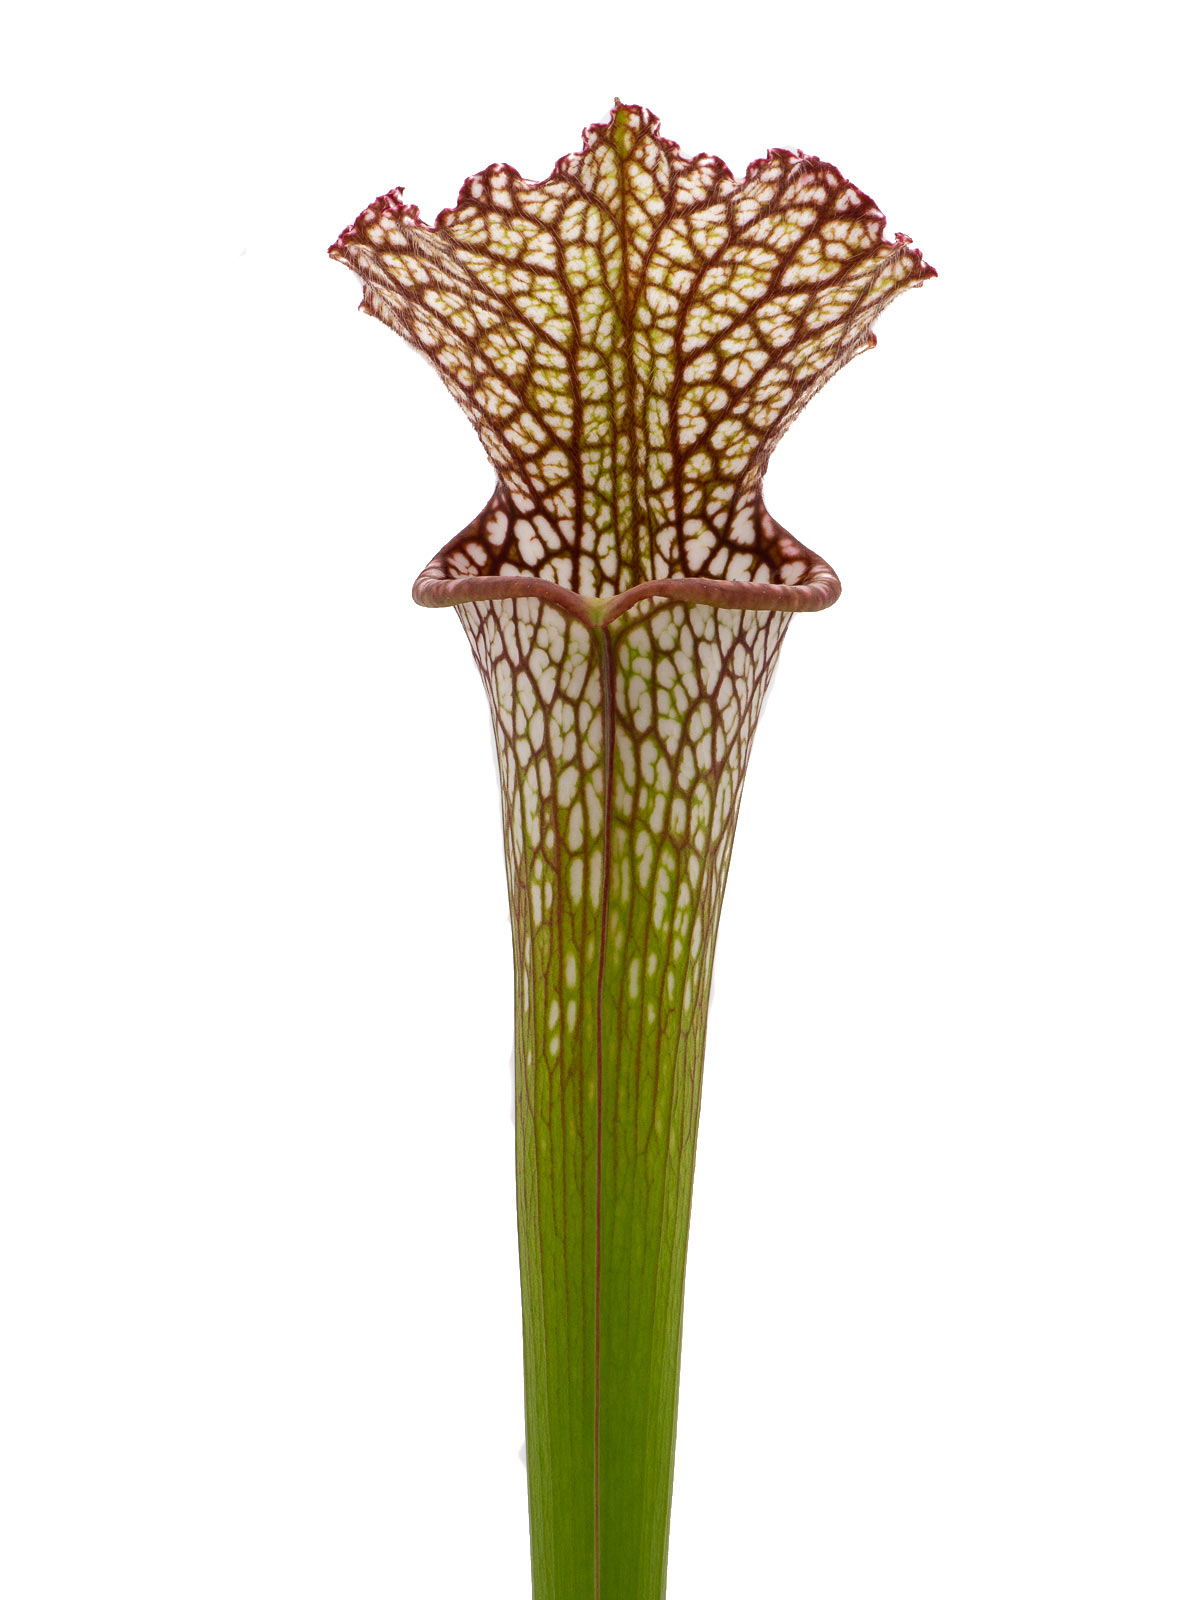 S. leucophylla - red form, Dr. Eberhad König, Clone B